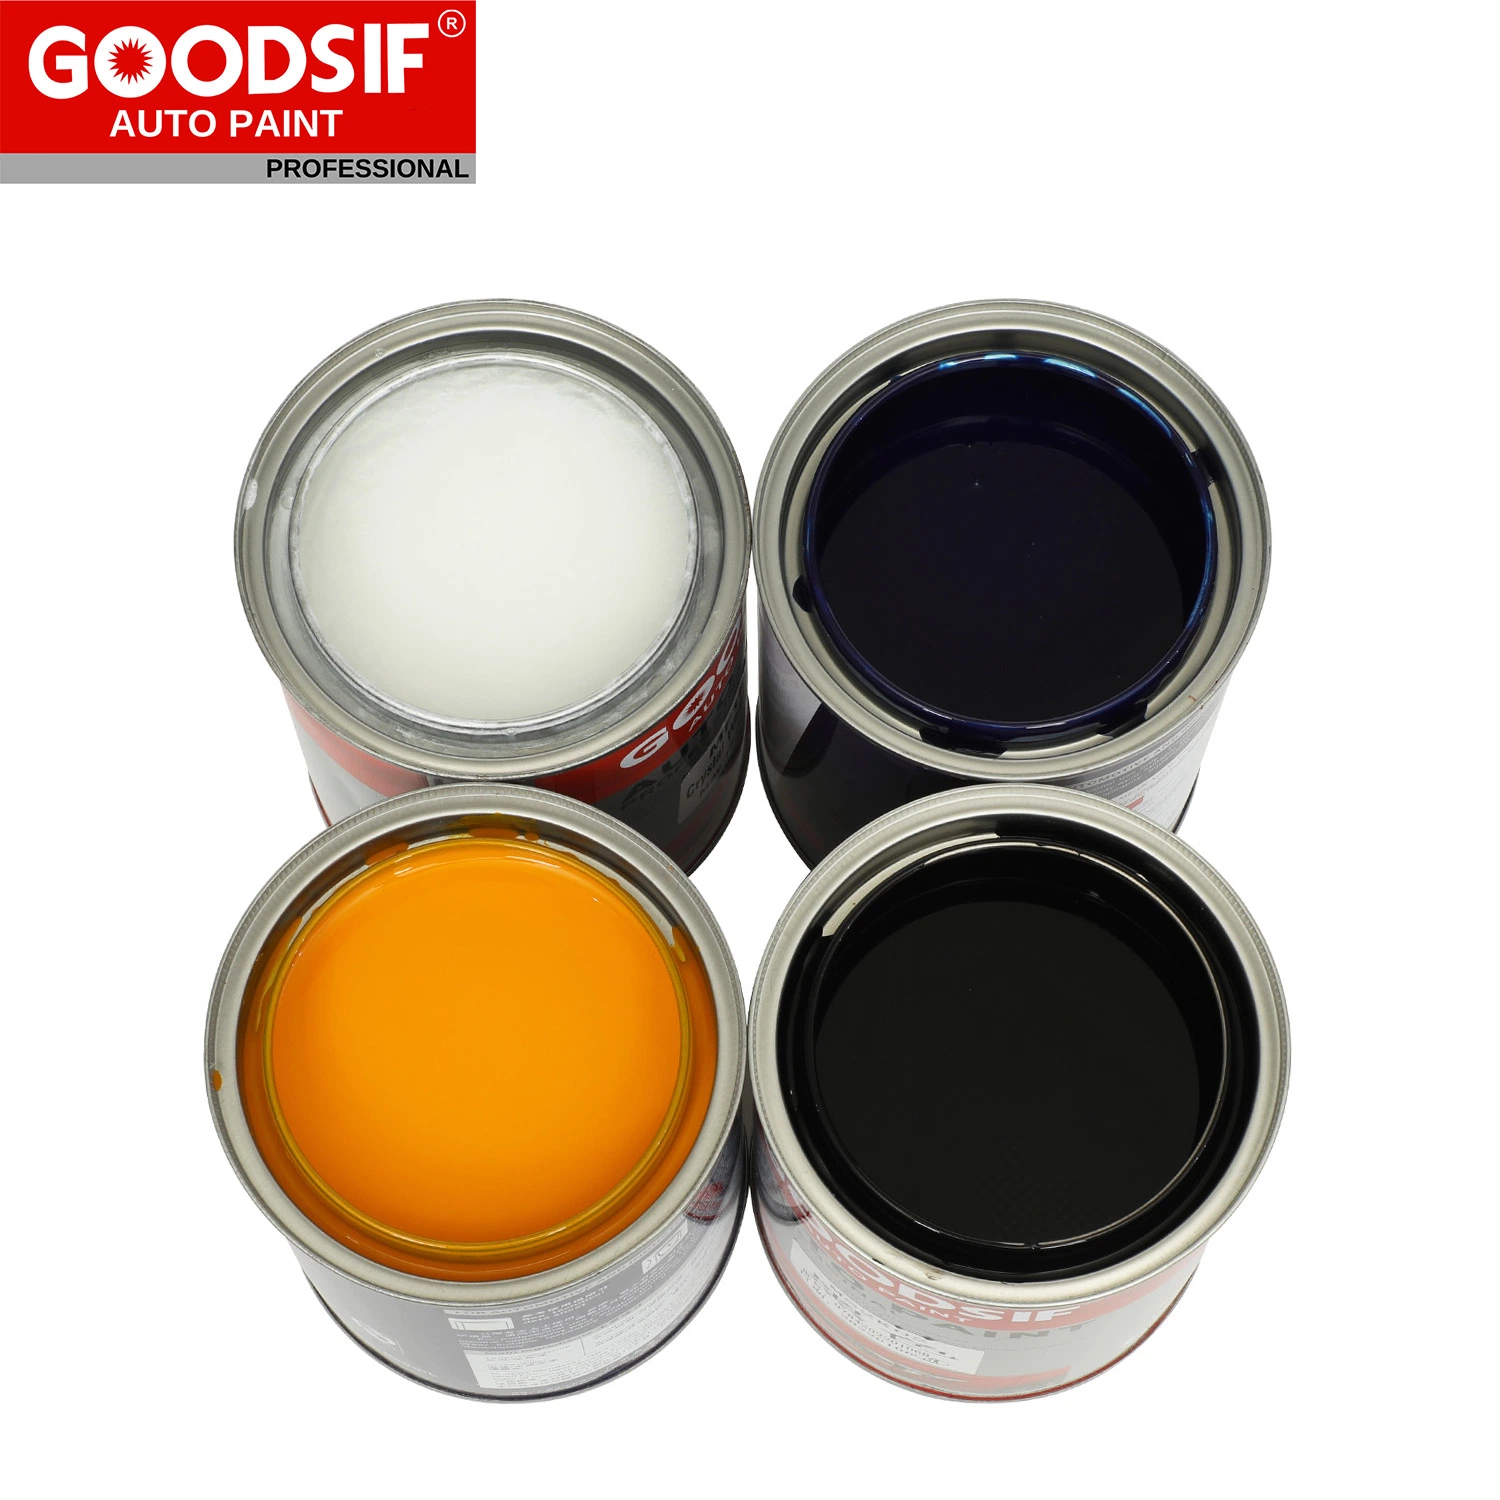 Goodsif Automotive Referish 1K Прозрачная пластиковая грунтовка краска акриловая Авто Профессиональная краска для автомобилей